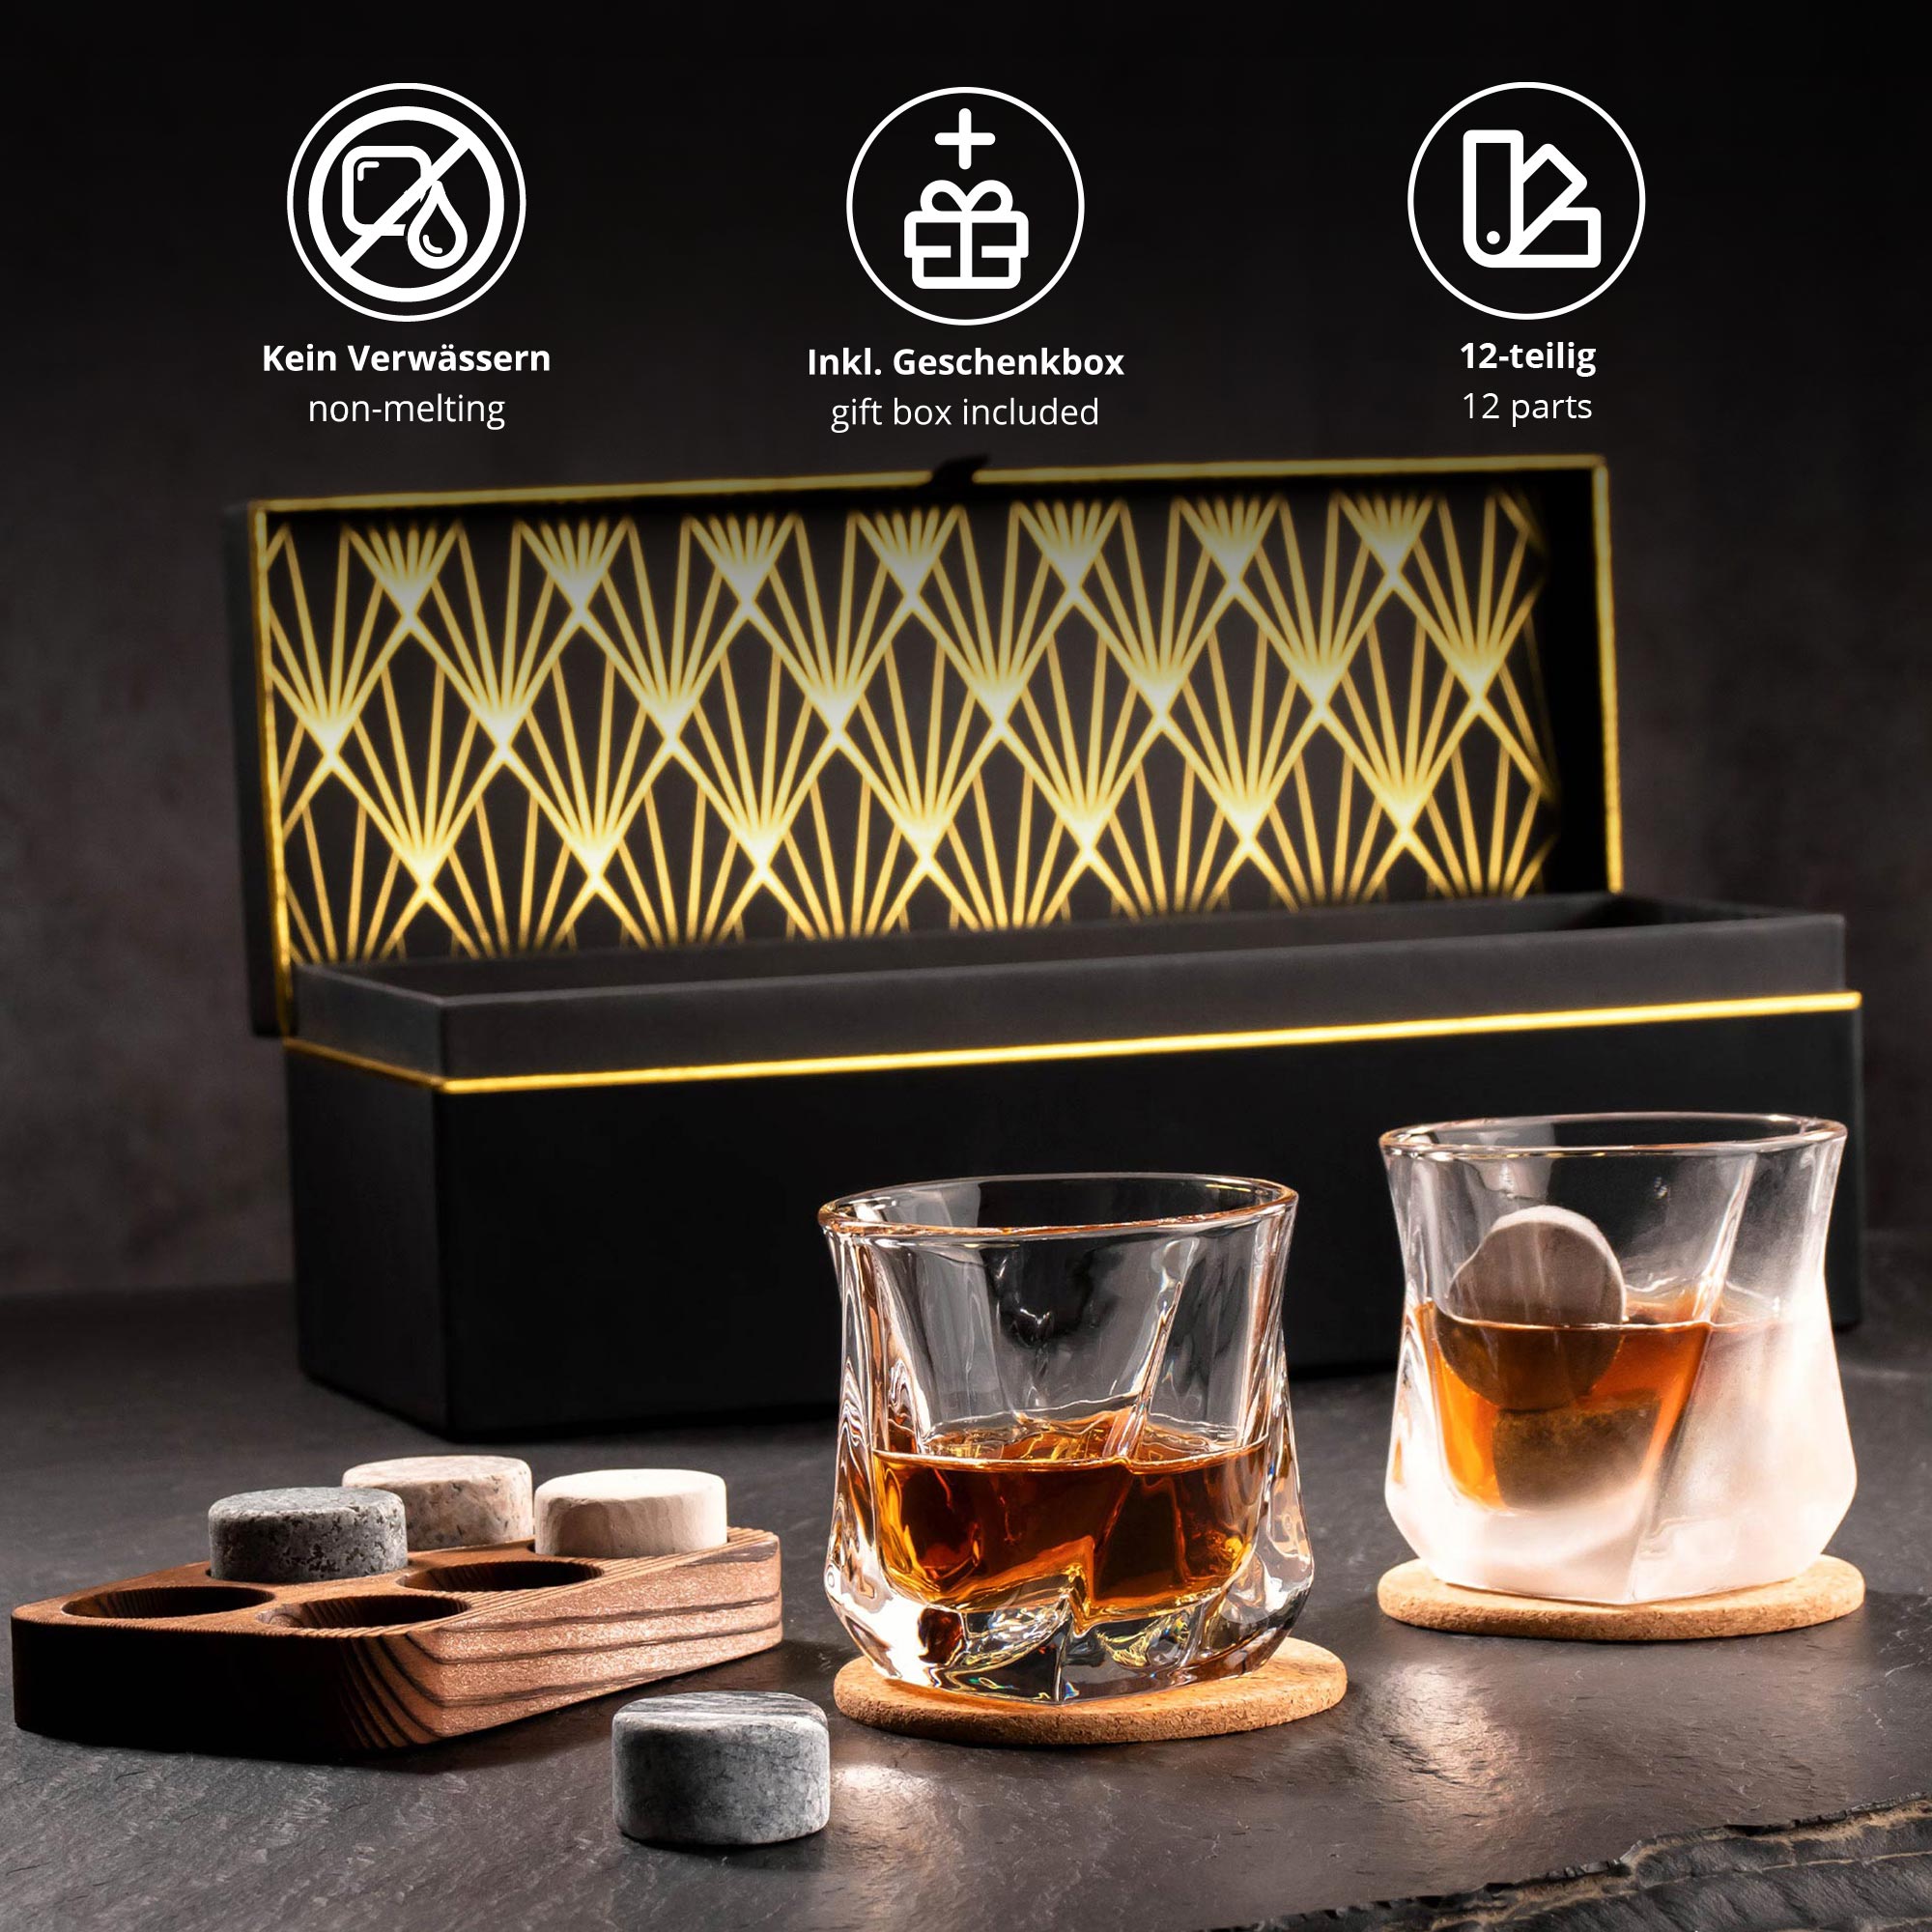 Whisky Set in edler Geschenkbox mit Gravur - Kompass